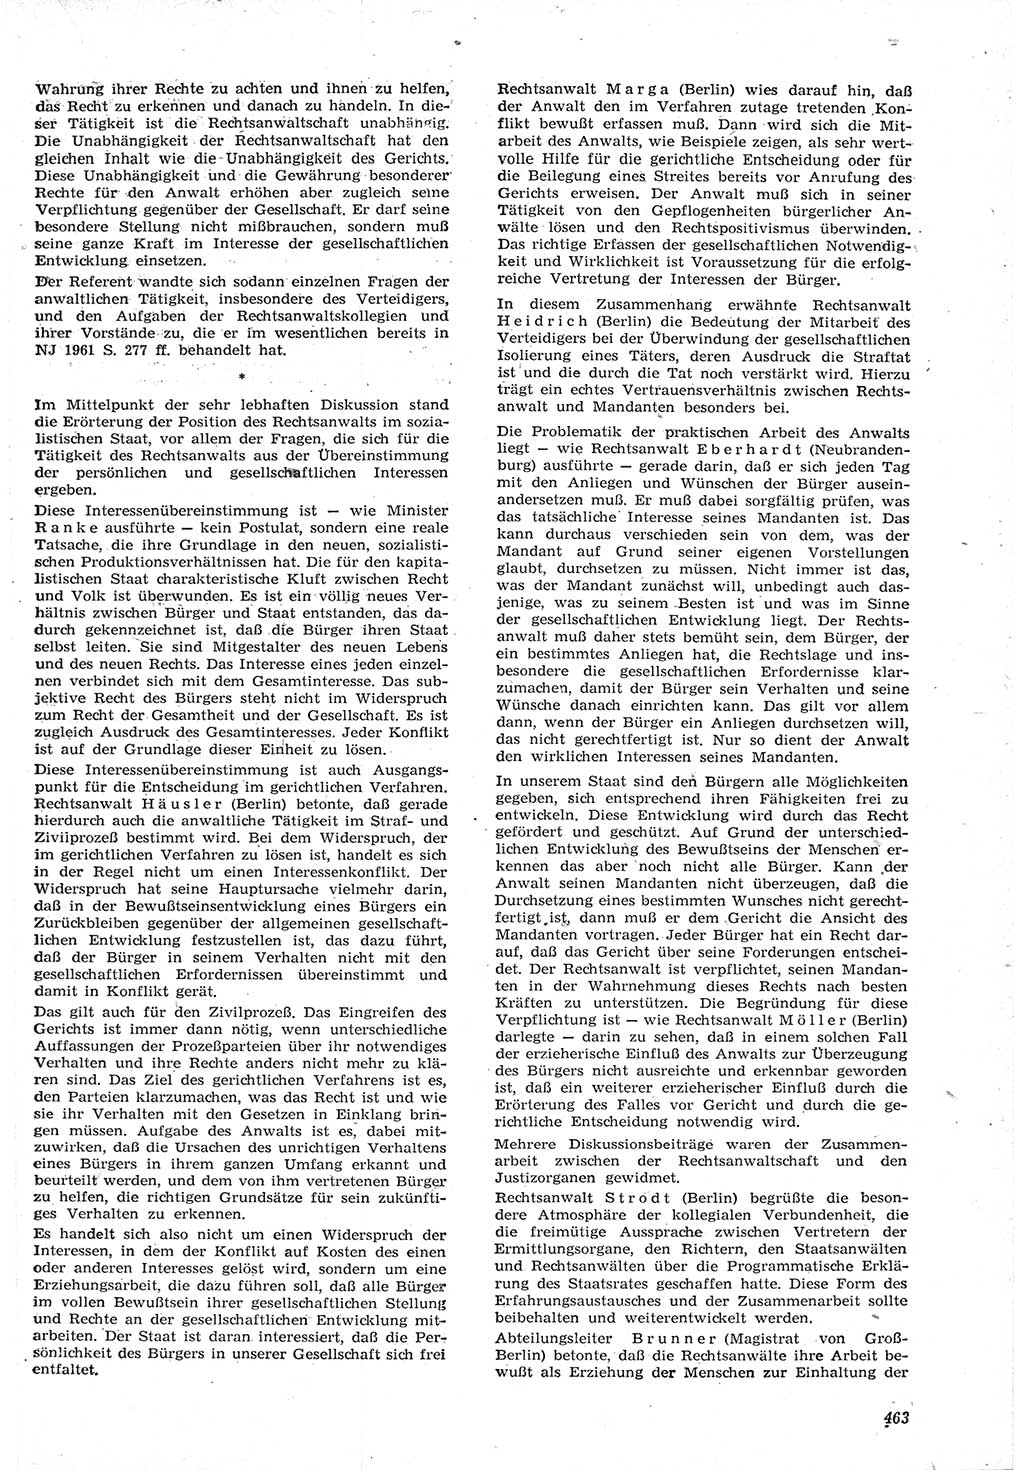 Neue Justiz (NJ), Zeitschrift für Recht und Rechtswissenschaft [Deutsche Demokratische Republik (DDR)], 15. Jahrgang 1961, Seite 463 (NJ DDR 1961, S. 463)